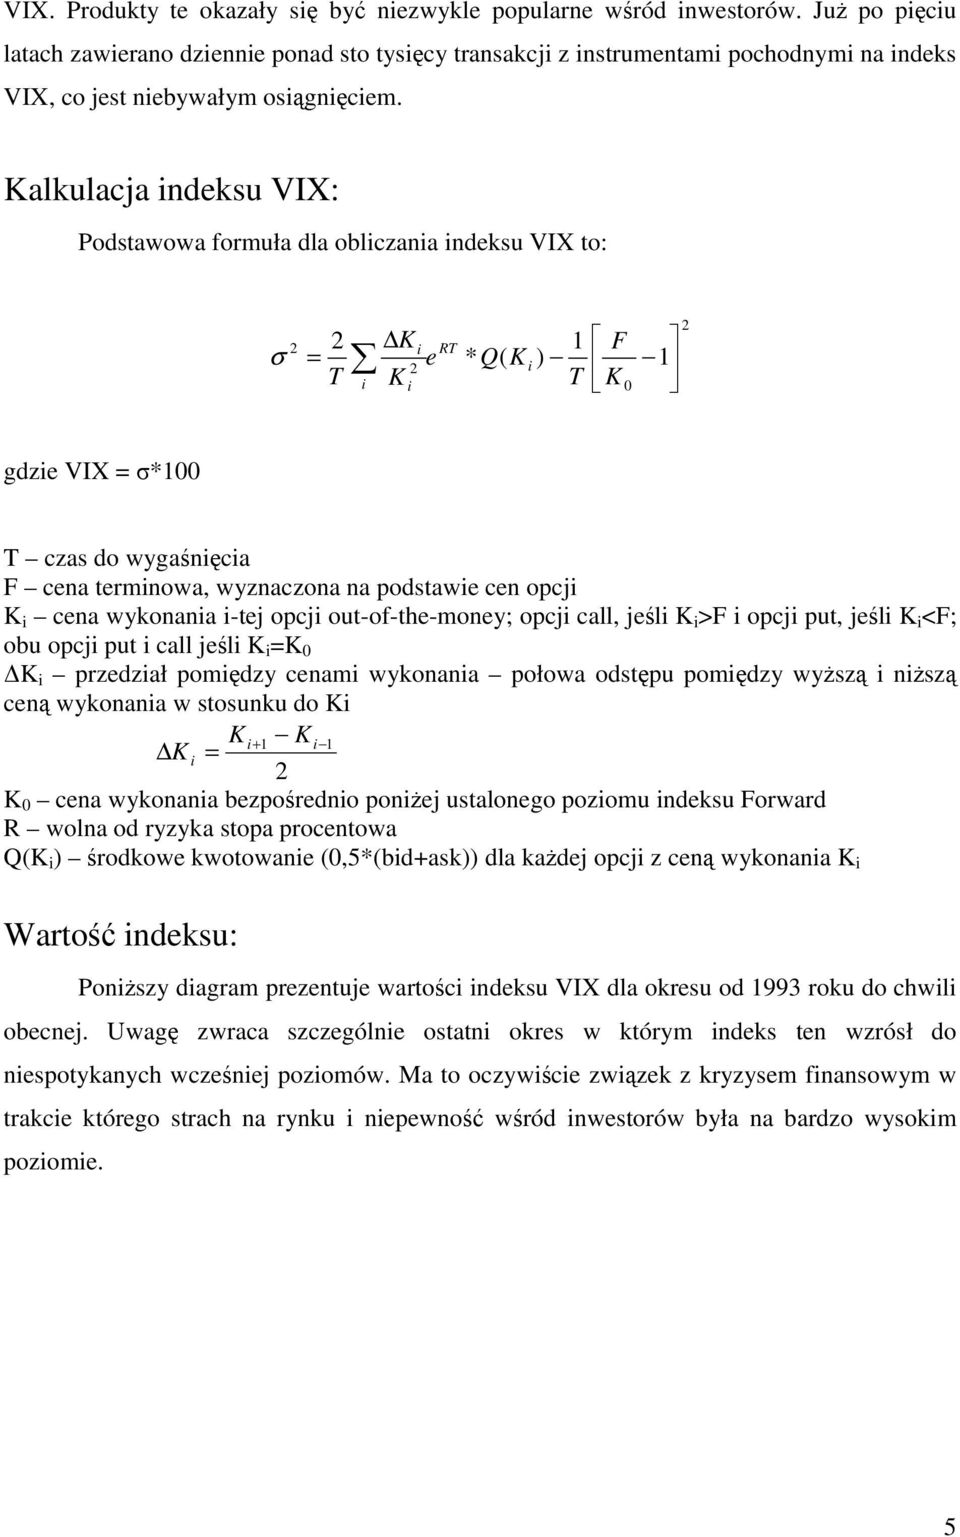 Kalkulacja indeksu VIX: Podstawowa formuła dla obliczania indeksu VIX to: σ K e Q K 1 F = i RT * ( ) i T K T K i i 0 1 gdzie VIX = σ*100 T czas do wygaśnięcia F cena terminowa, wyznaczona na